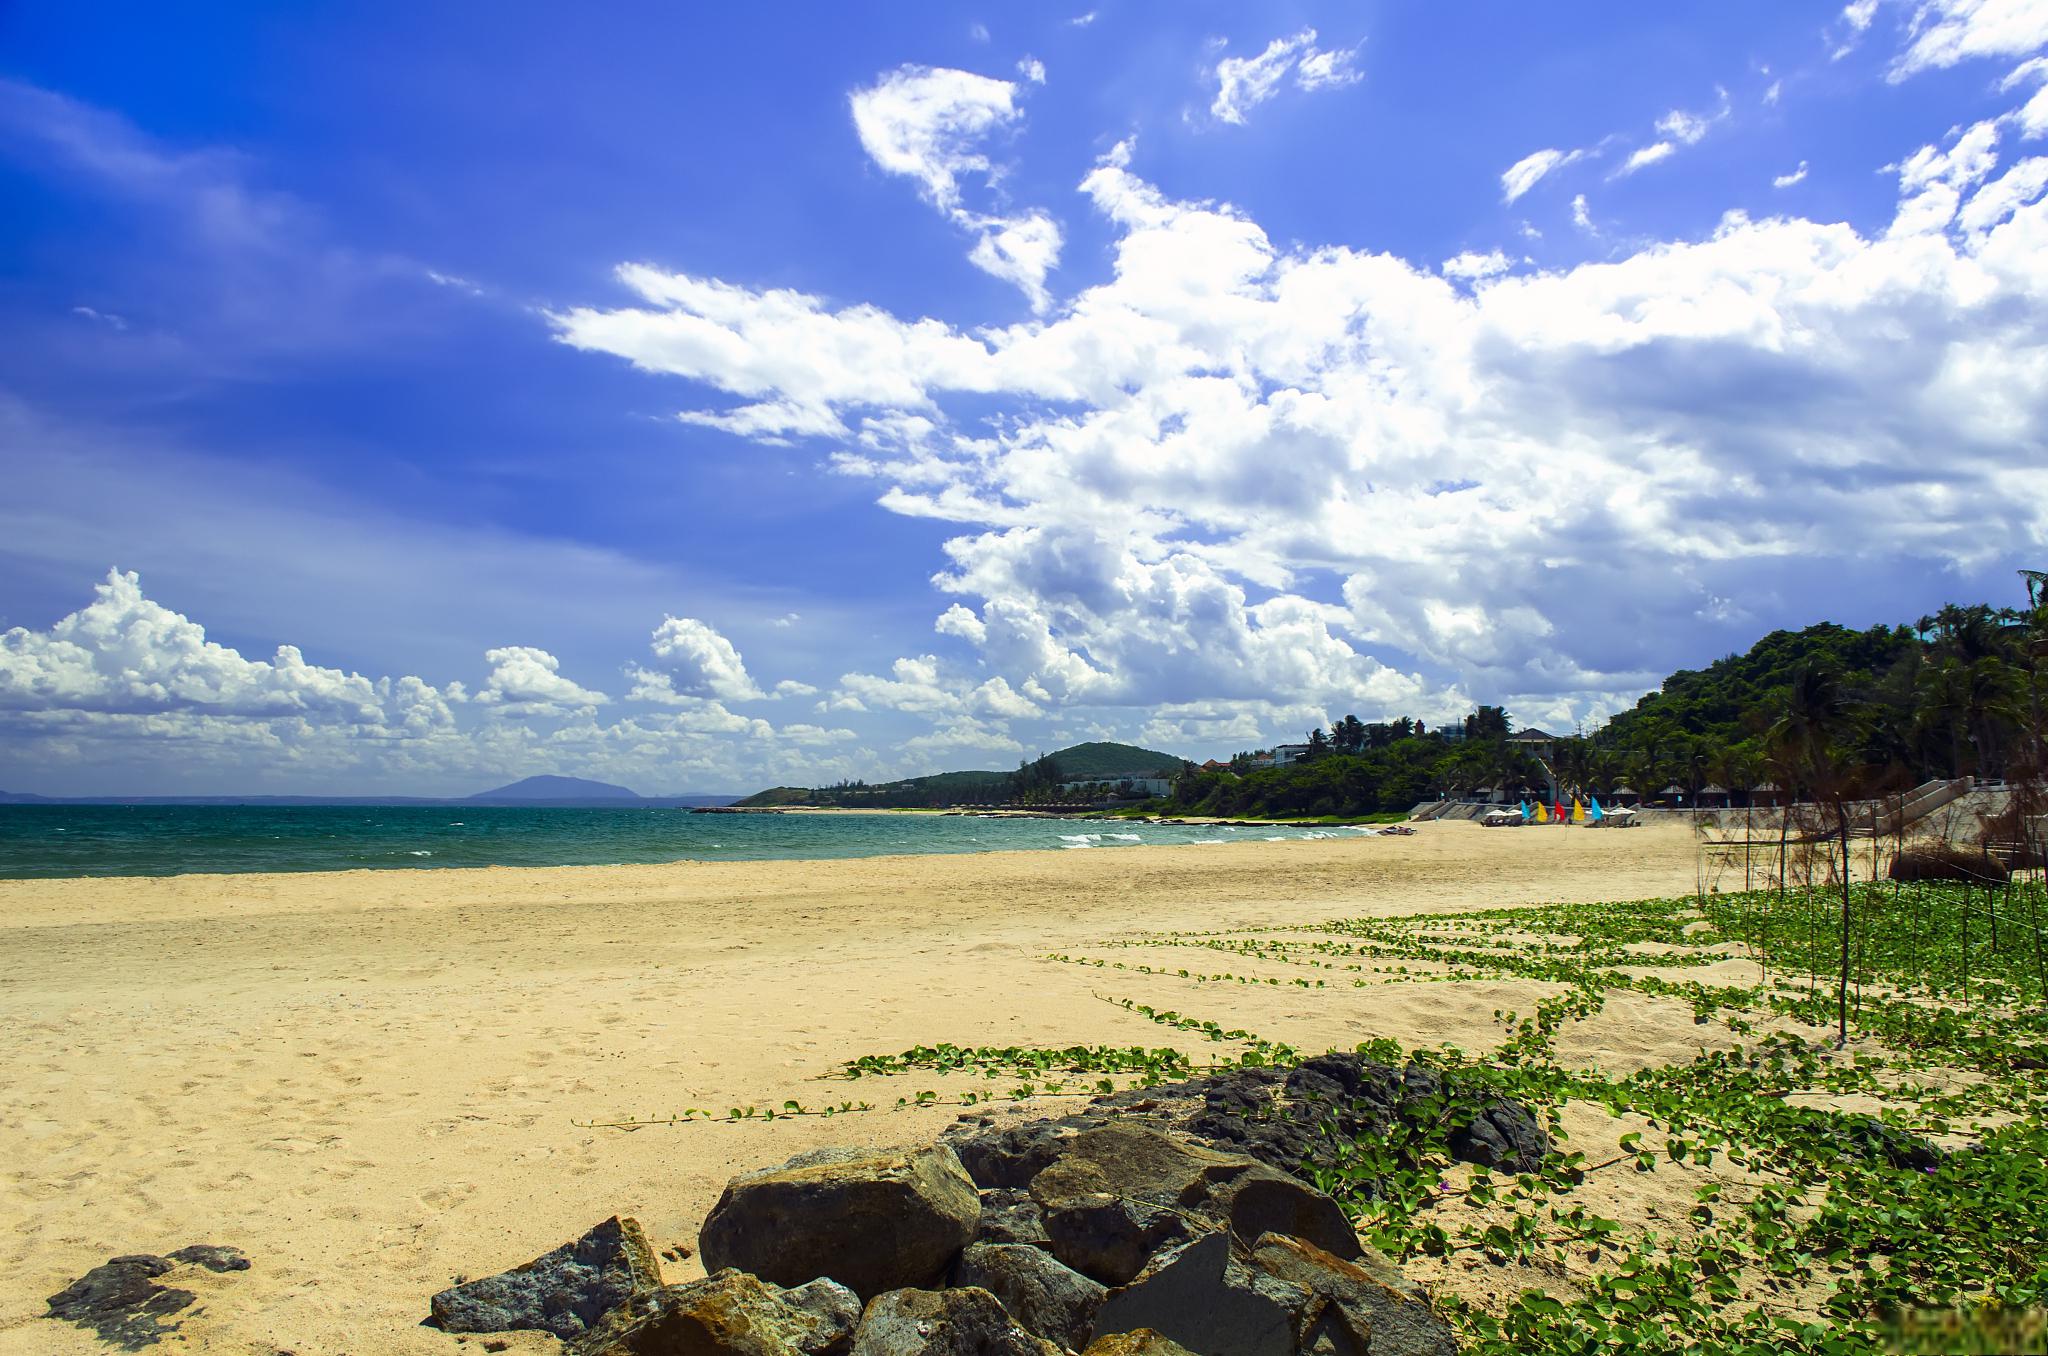 大亚湾旅游景点介绍 大亚湾是位于广东省汕头市澄海区的一个海滨旅游